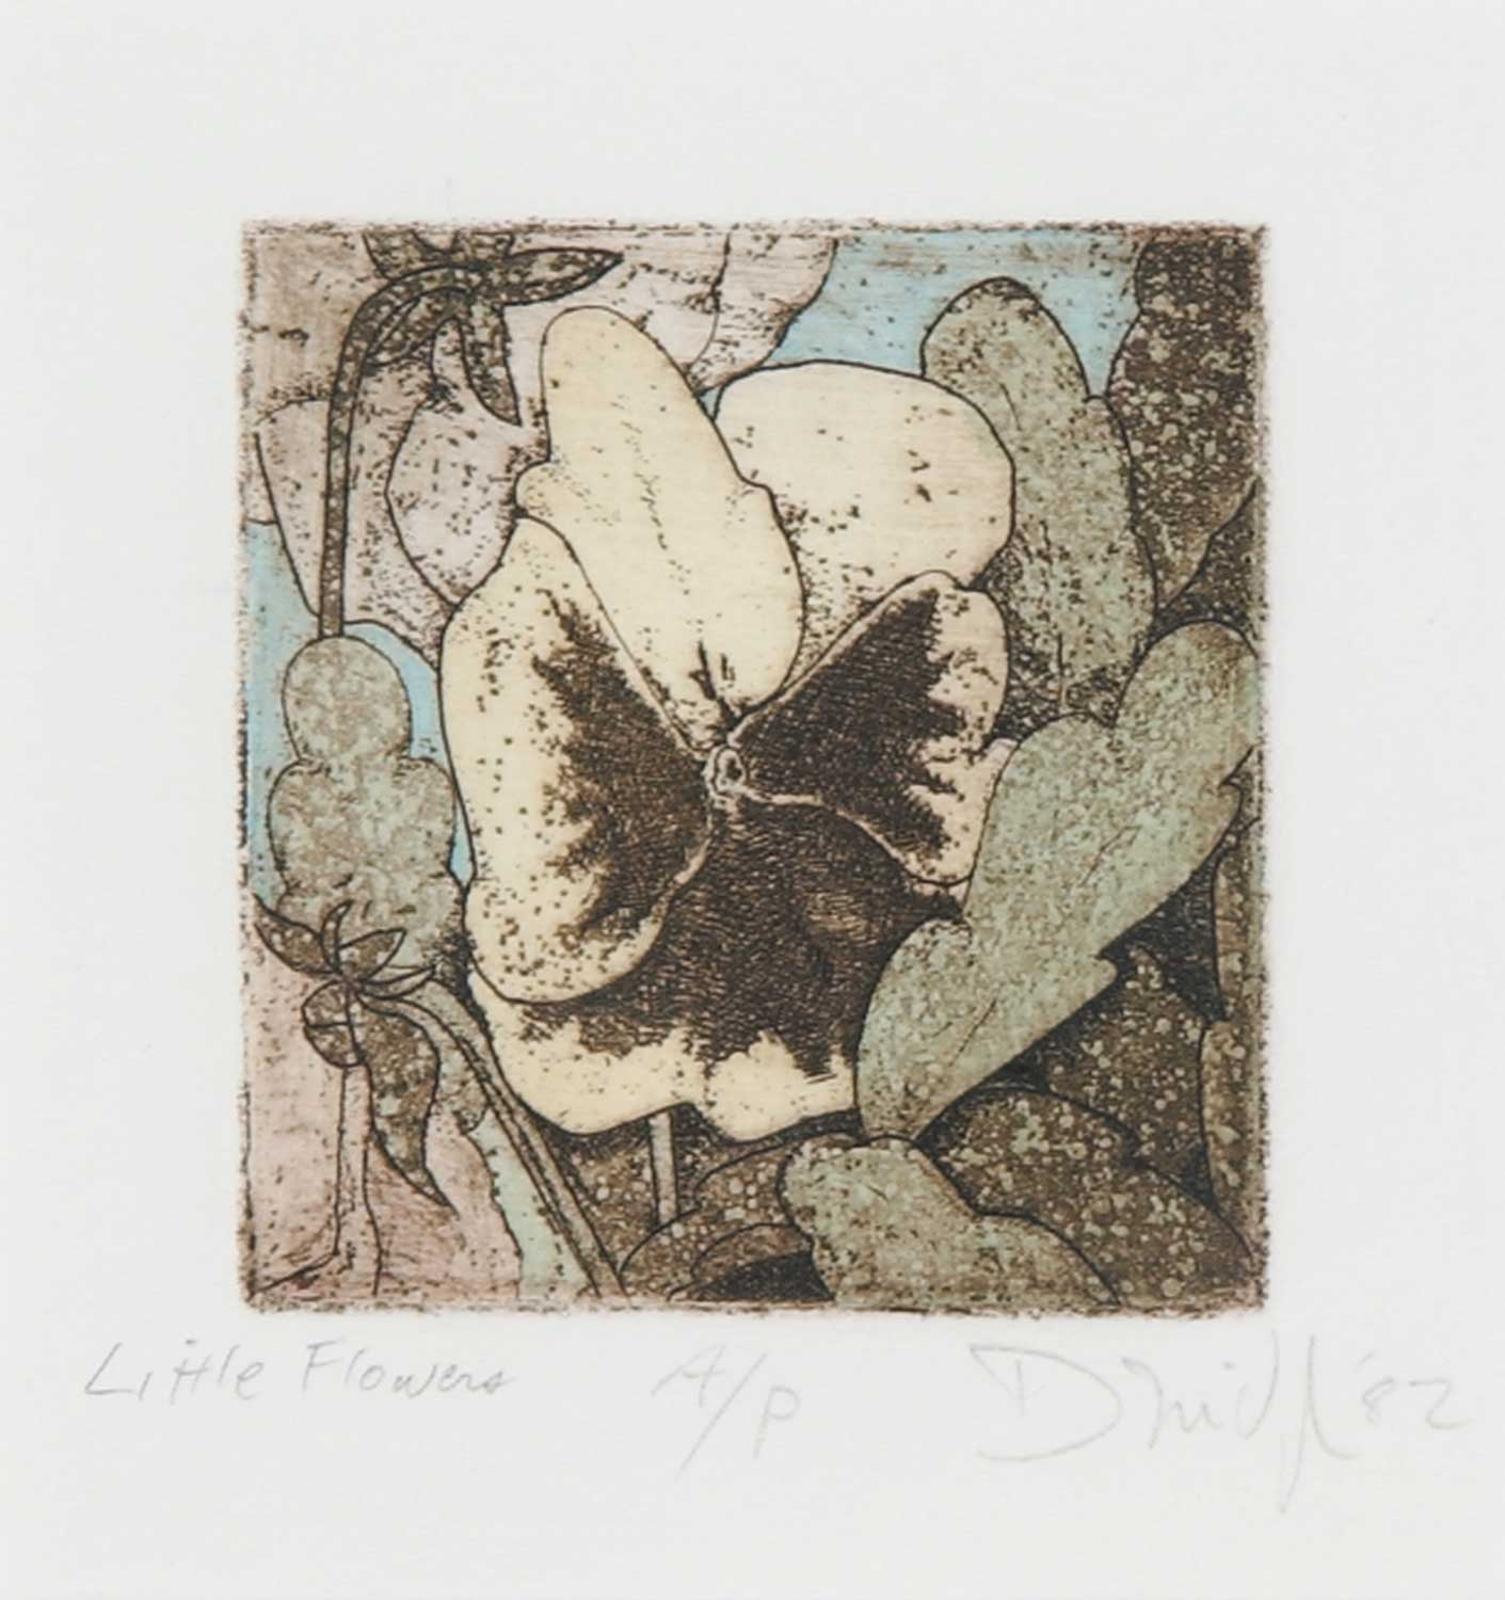 Don McVeigh (1951) - Little Flowers  #A/P